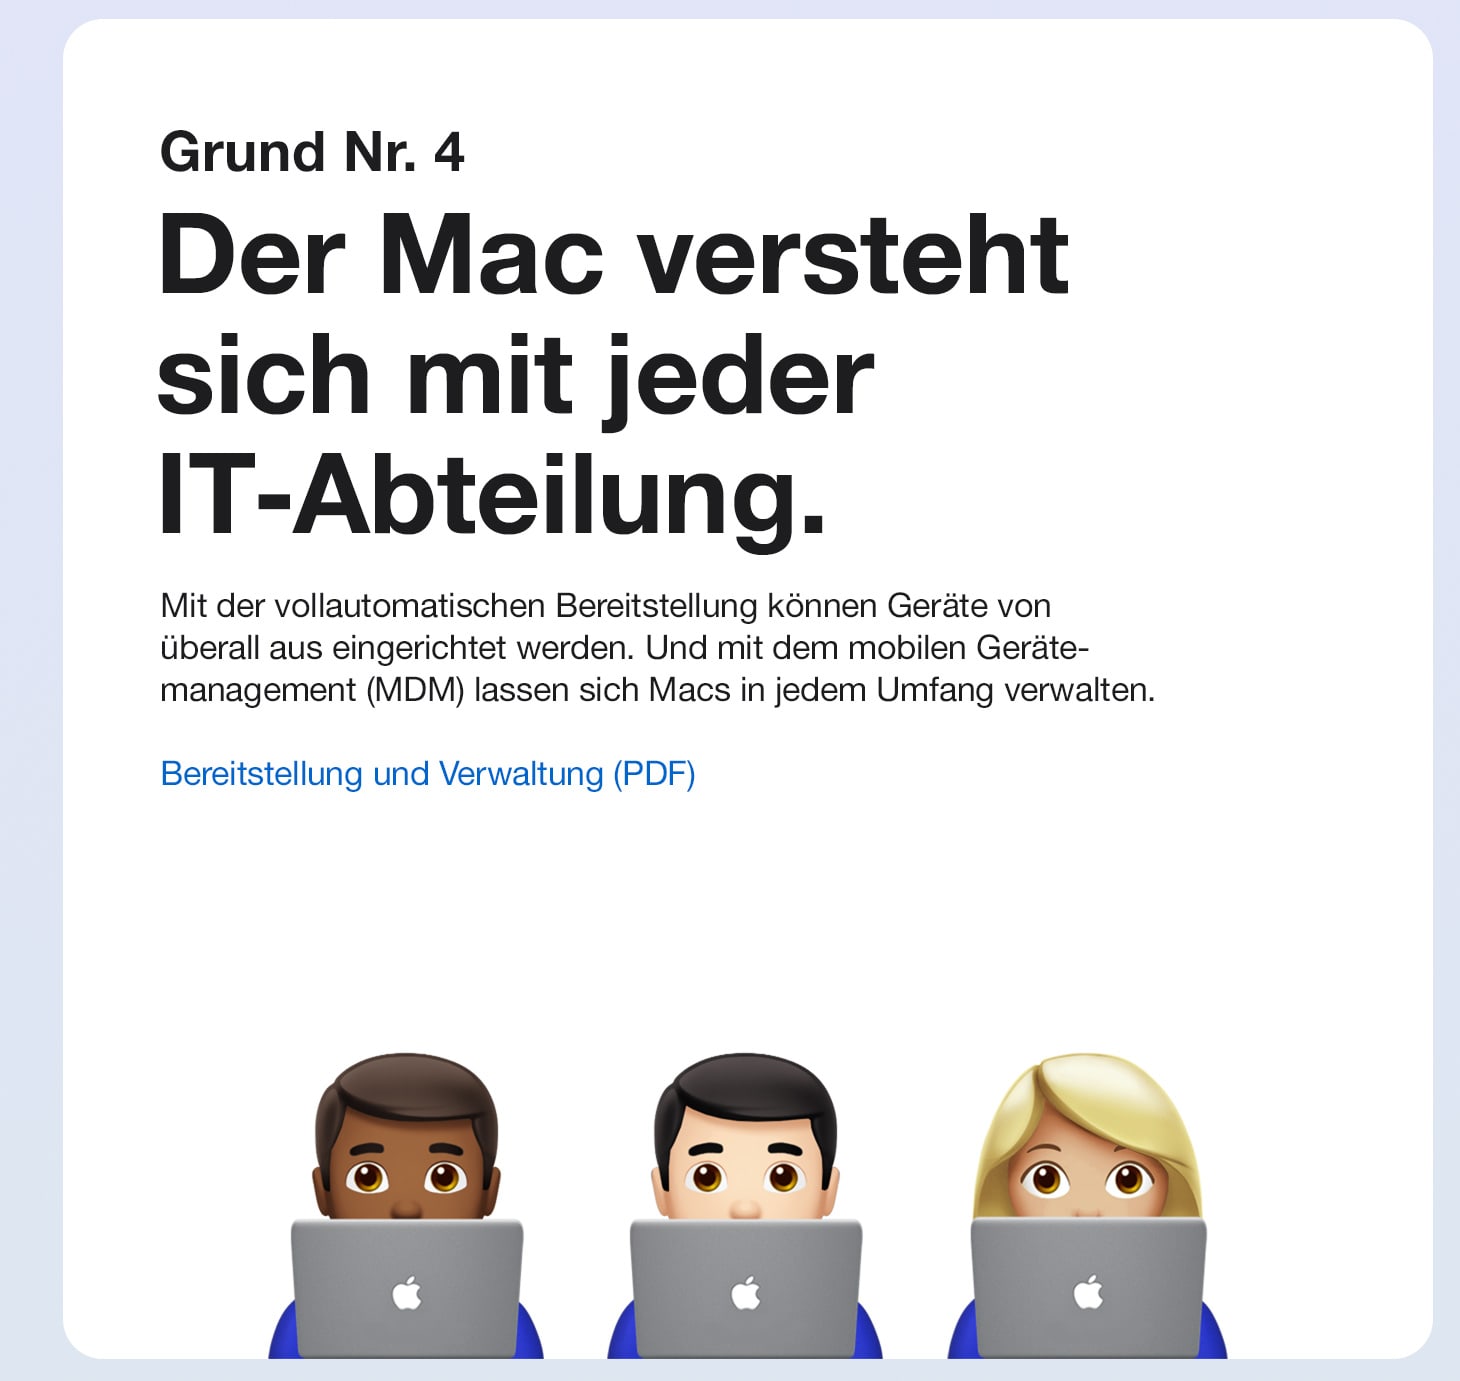 Der Mac versteht sich mit jeder IT-Abteilung.